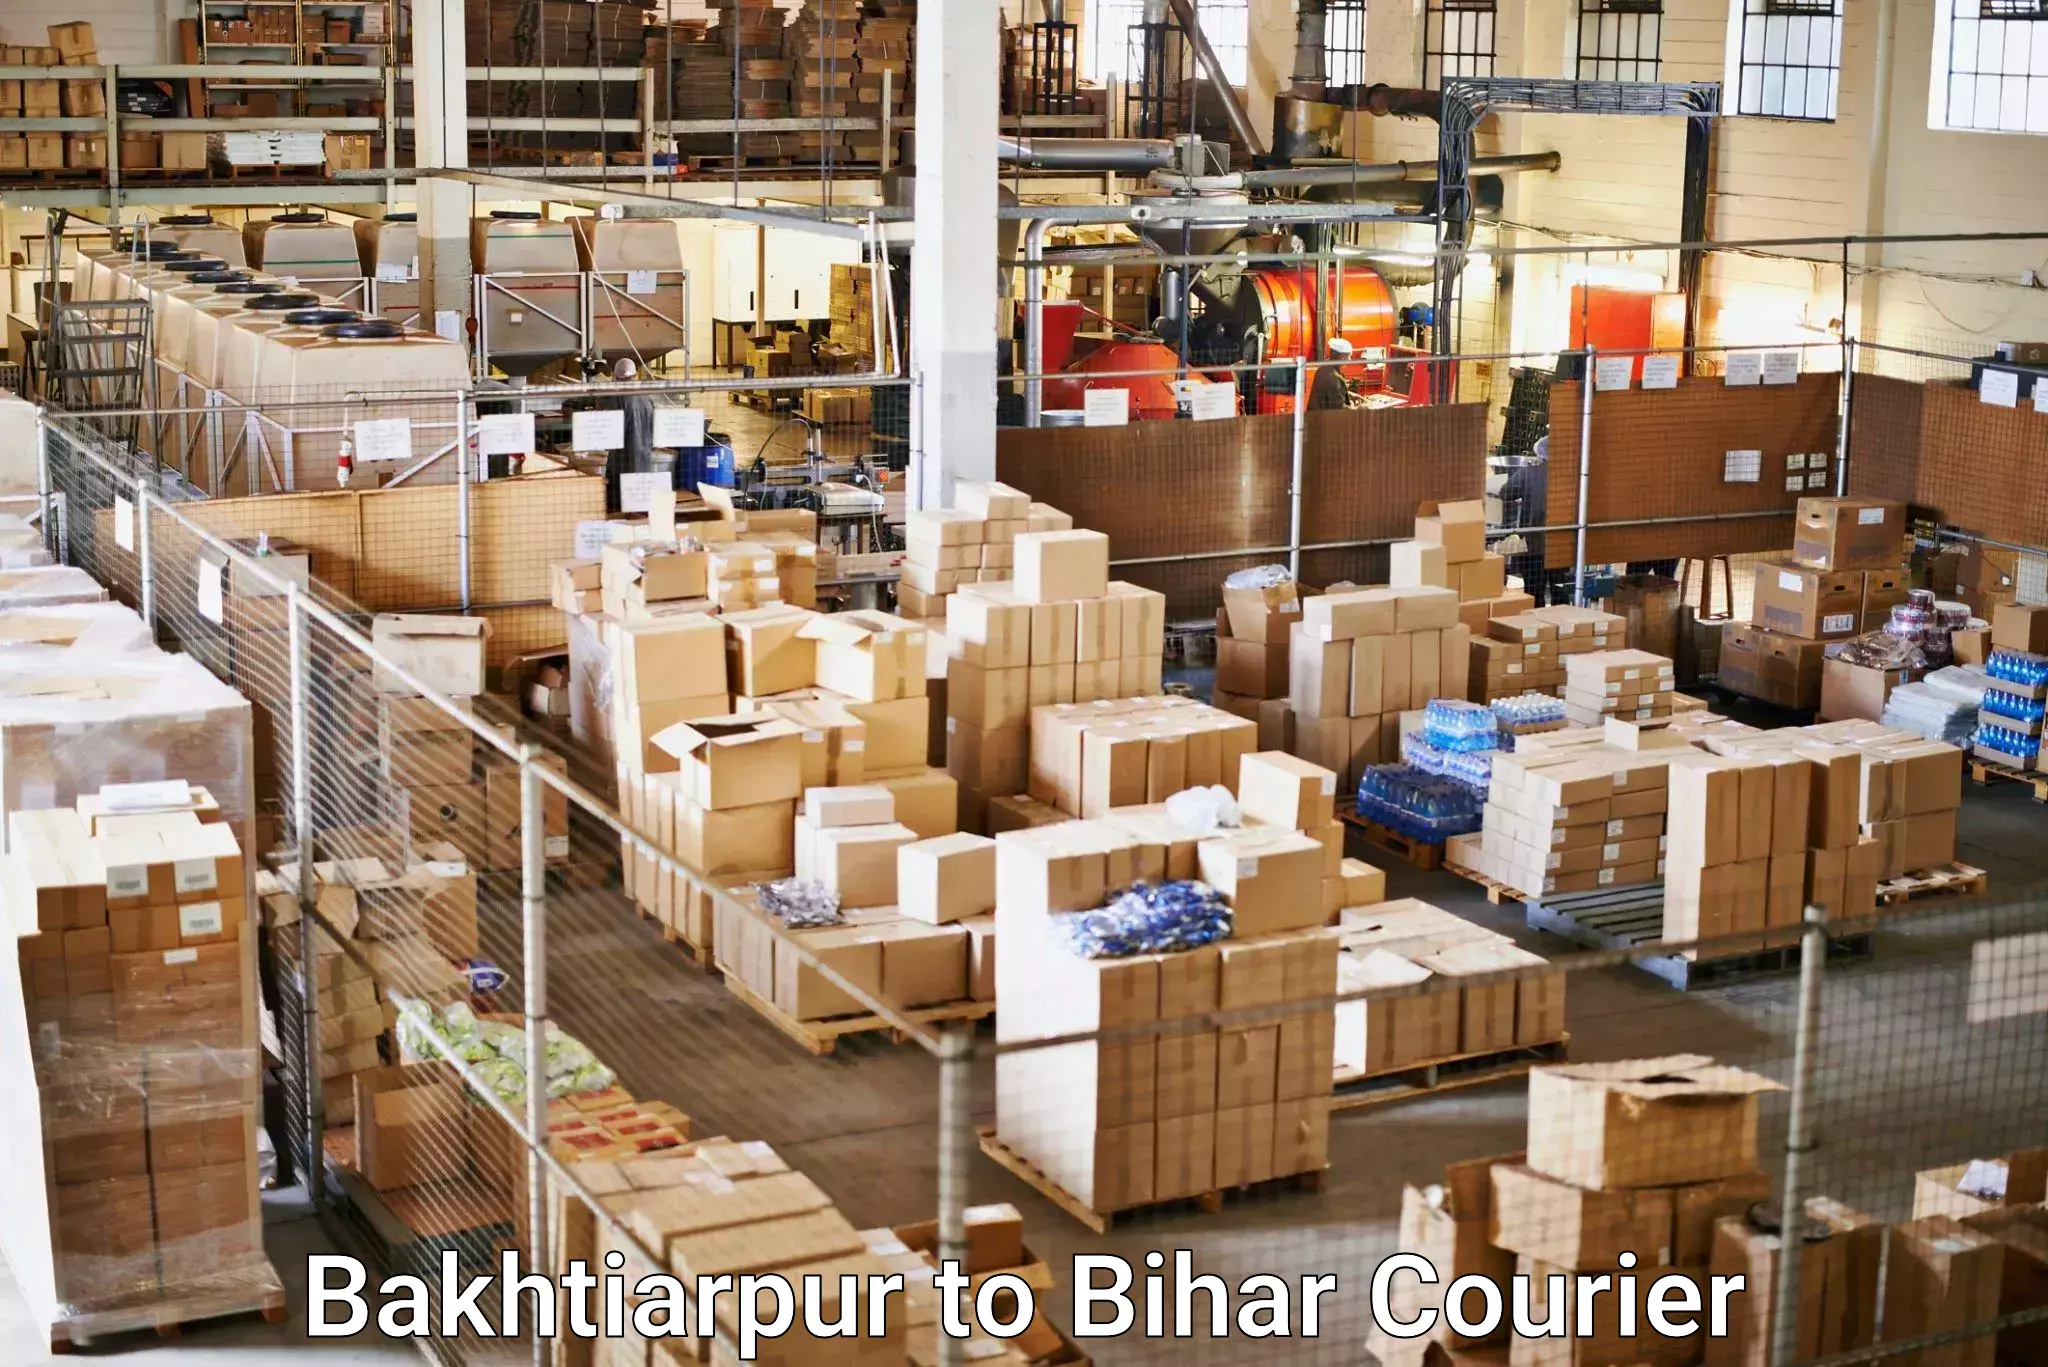 Door-to-door freight service Bakhtiarpur to Hajipur Vaishali